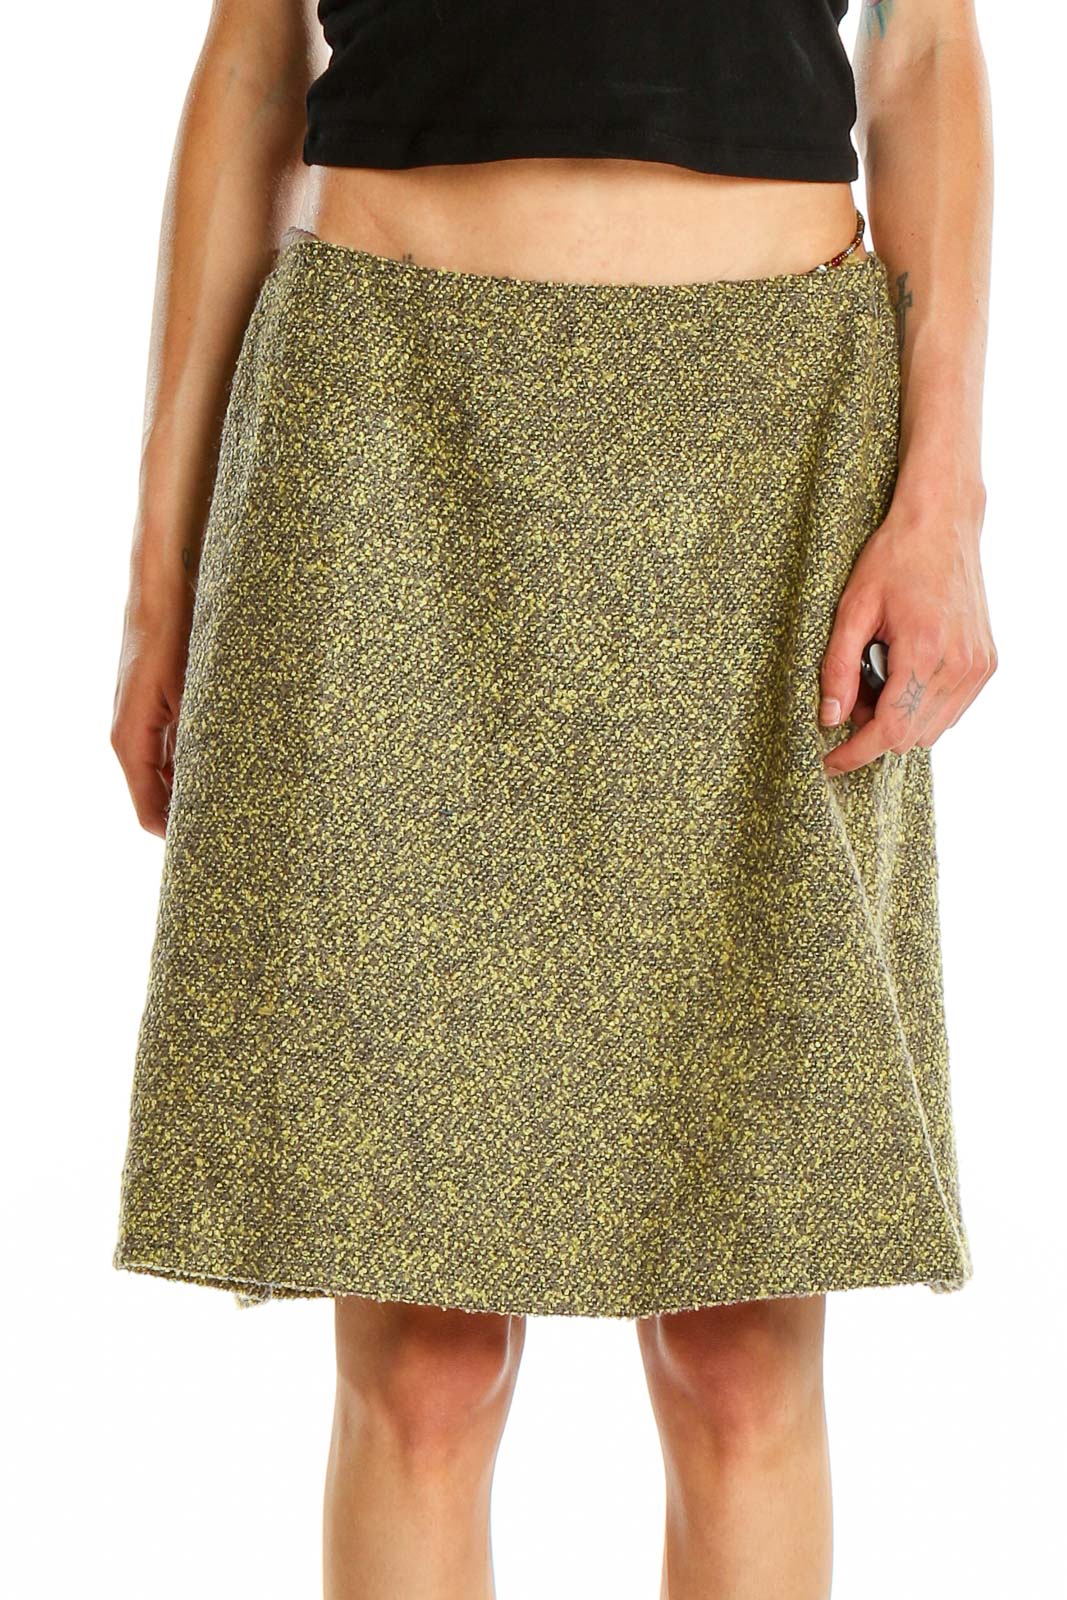 Green Textured Work A-Line Skirt Front